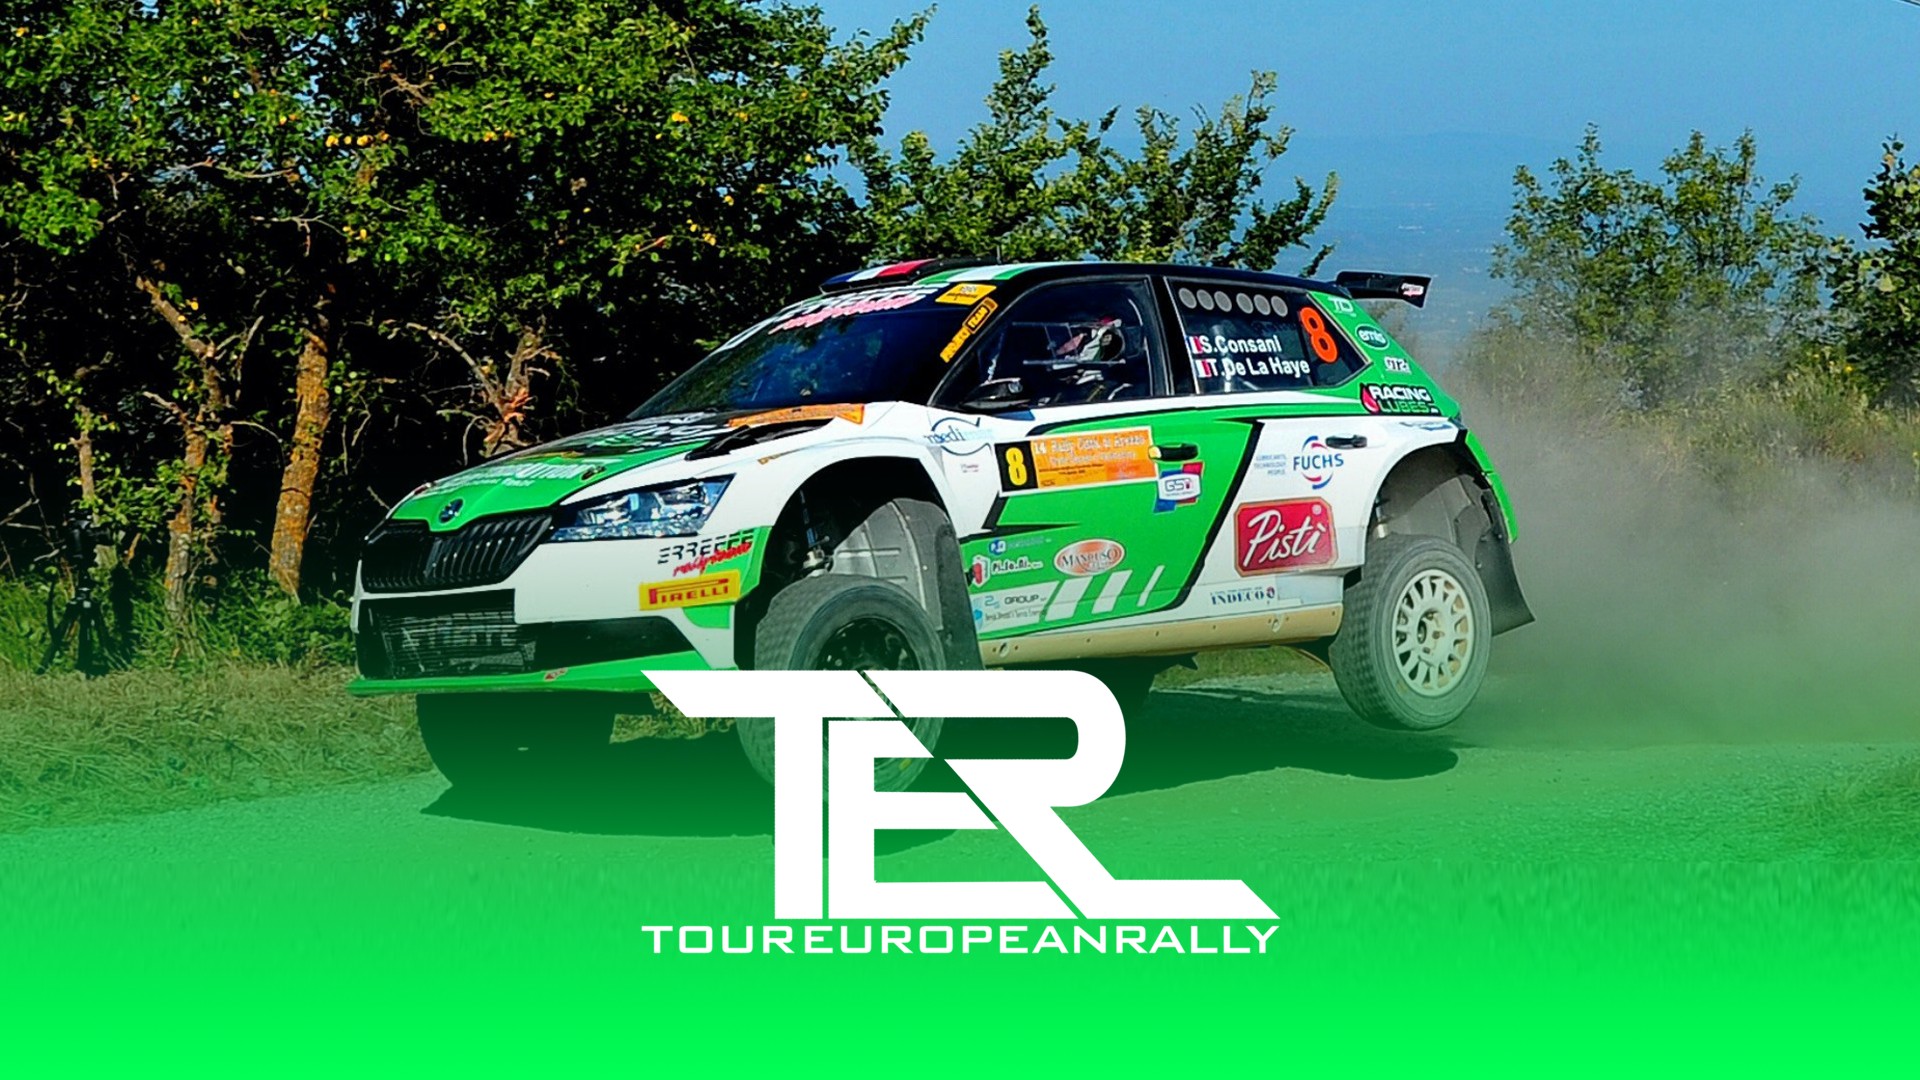 Tour European Rally